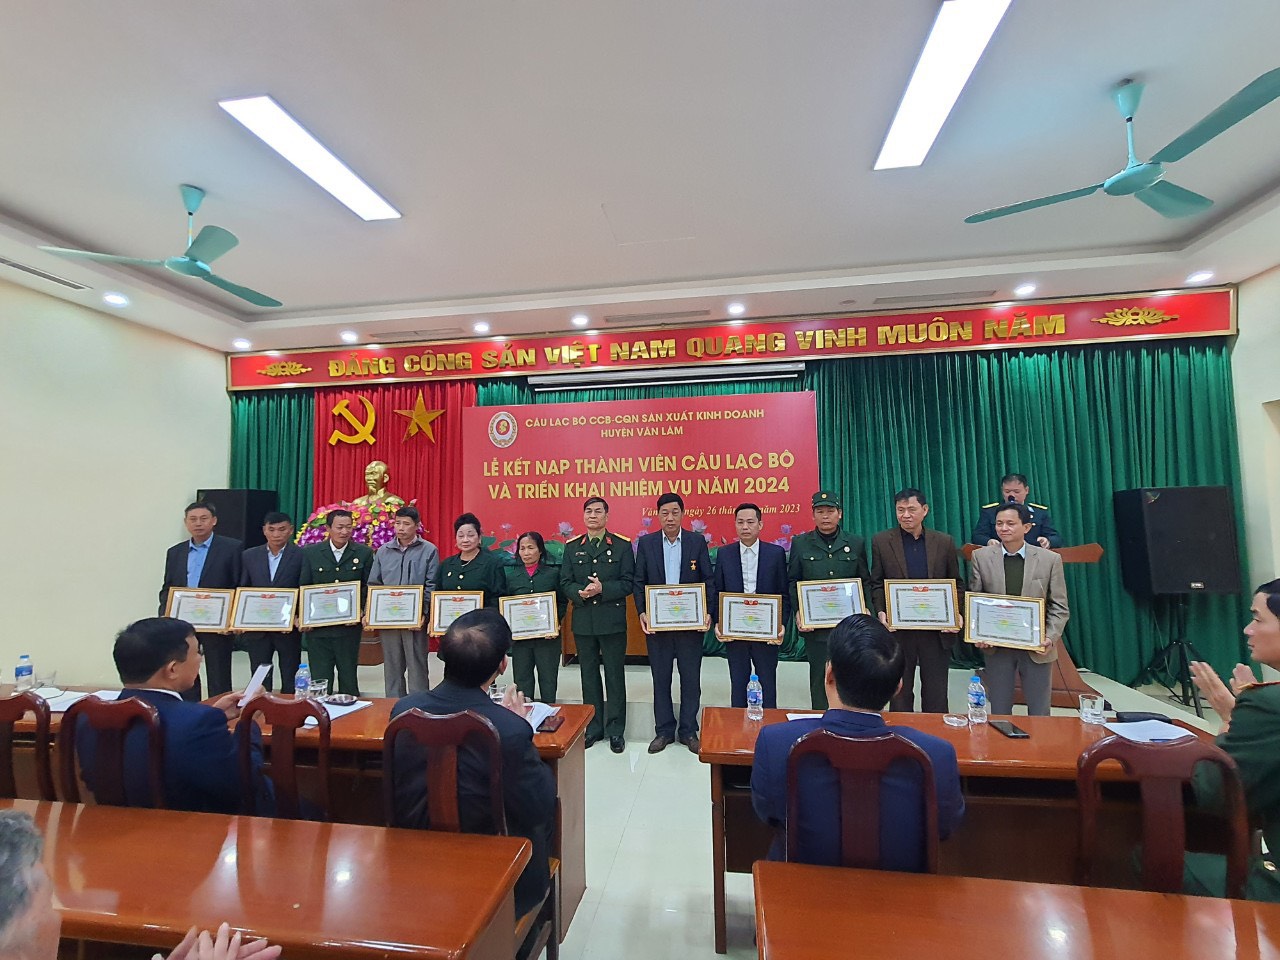 Câu lạc bộ cựu chiến binh- cựu quân nhân sản xuất kinh doanh huyện Văn Lâm tổ chức triển khai nhiệm vụ năm 2024